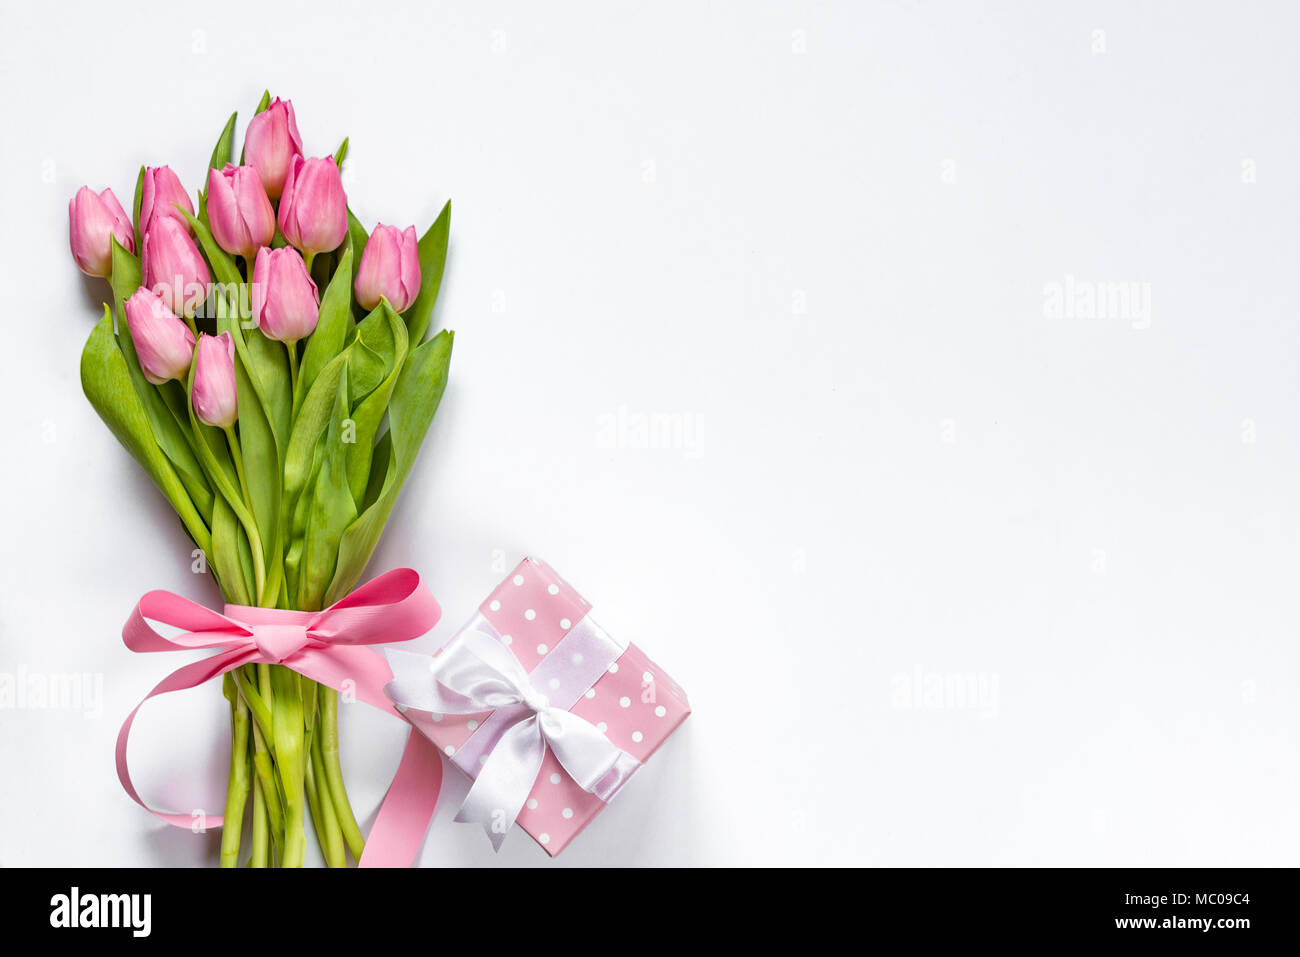 Vue de dessus de tulipes roses bouquet, enveloppés de ruban rose et rose boîte cadeau en pointillés sur fond blanc. Copier l'espace. Banque D'Images